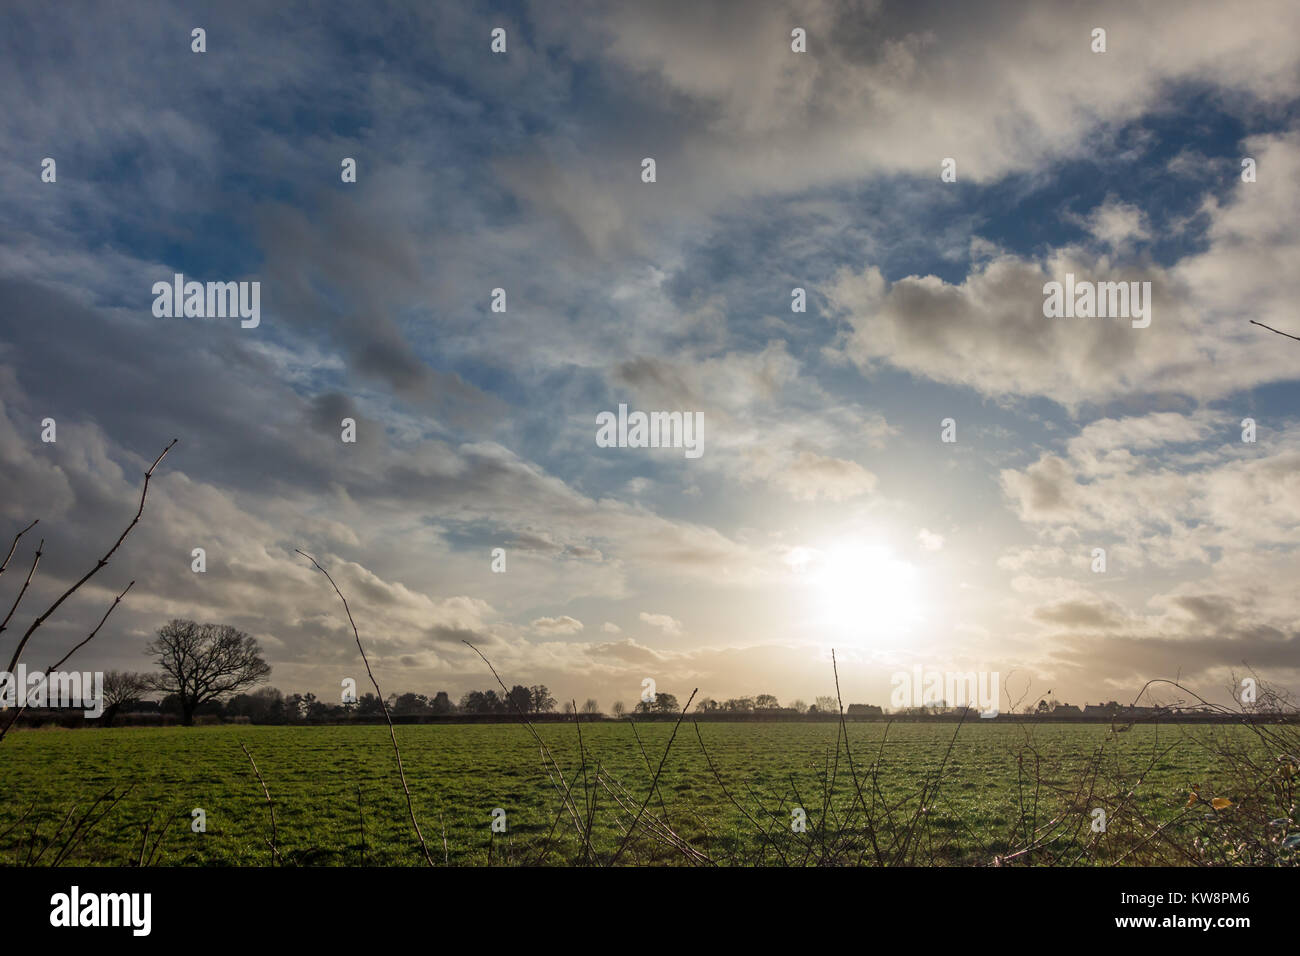 Wolverhampton, Regno Unito. 31 dic 2017. Regno Unito: Meteo i picchi di sole attraverso le nuvole alla fine della giornata dopo una giornata grigia per il tempo finale nel 2017. Wolverhampton, Regno Unito. Matteo Ashmore/Alamy Live News Foto Stock